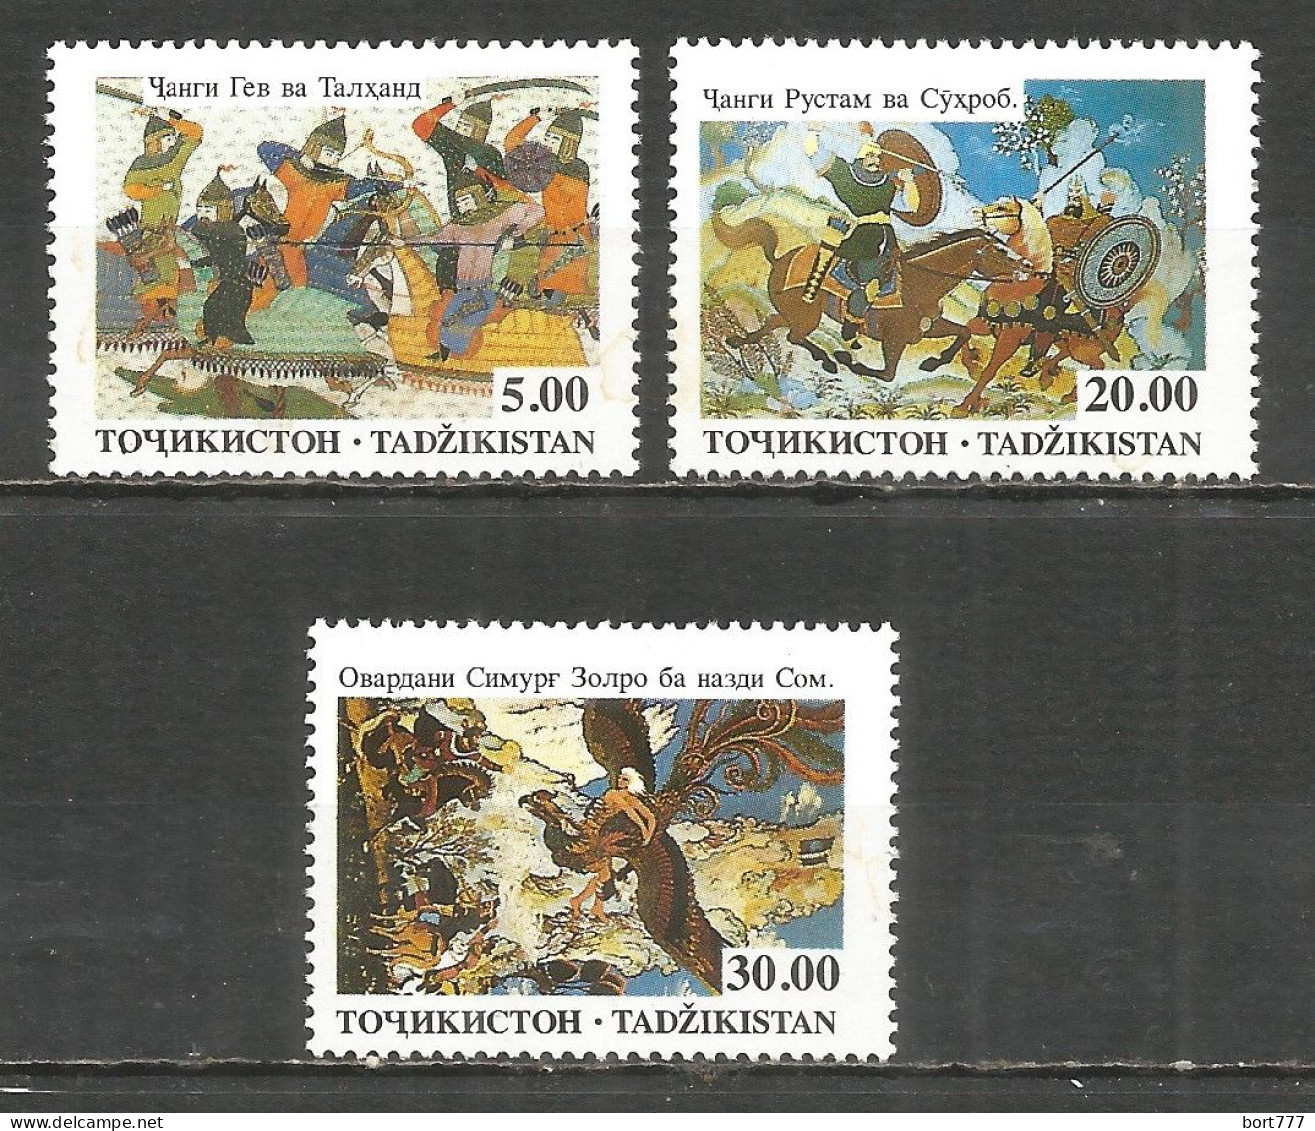 Tajikistan 1993 Year, Mint Stamps MNH (**) Mi. # 27-29 - Tajikistan